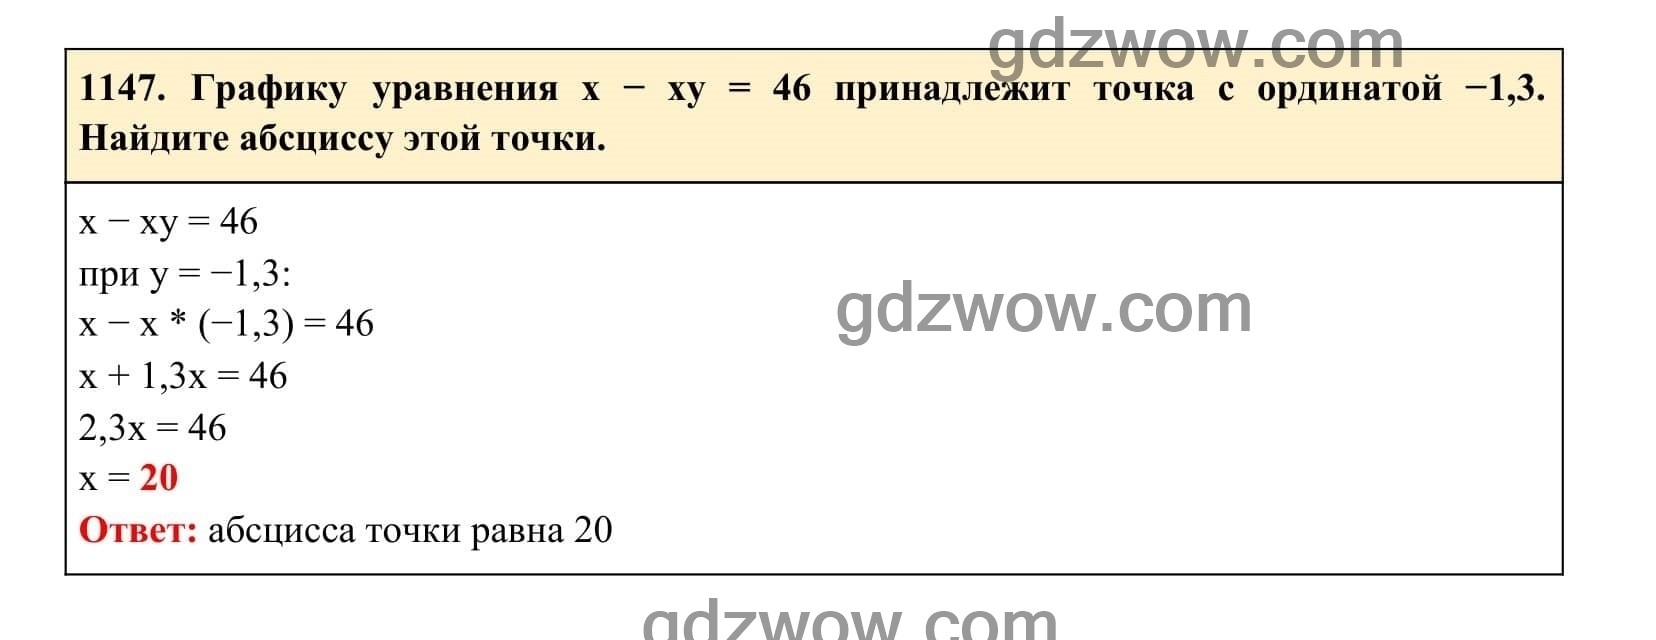 Упражнение 1147 - ГДЗ по Алгебре 7 класс Учебник Макарычев (решебник) - GDZwow